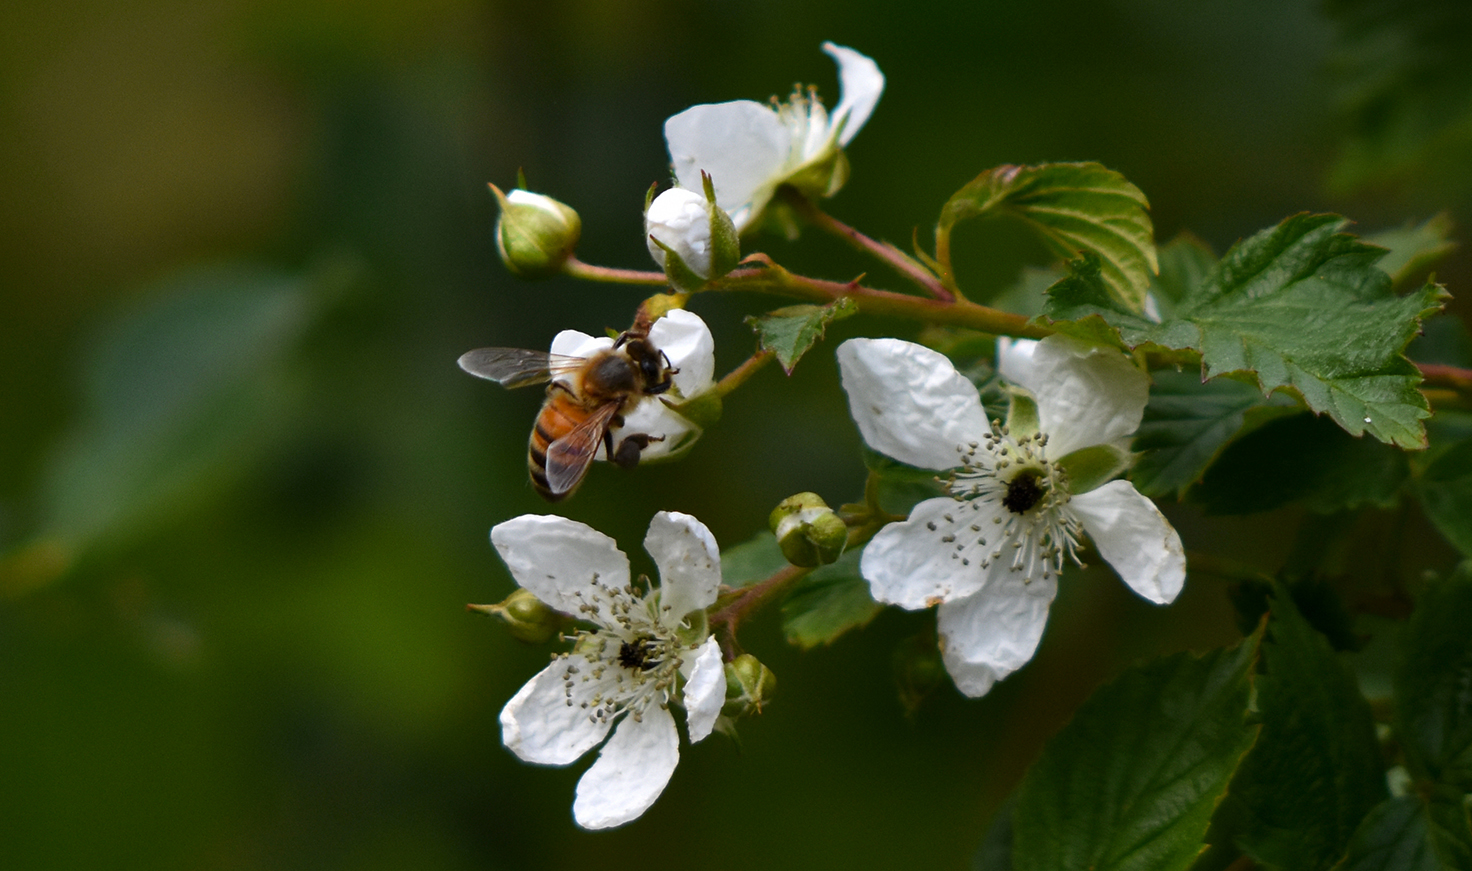 Ook de bloemen van de braamstruiken lokken de bijen naar zich toe - Foto: ©Louis Fraanje